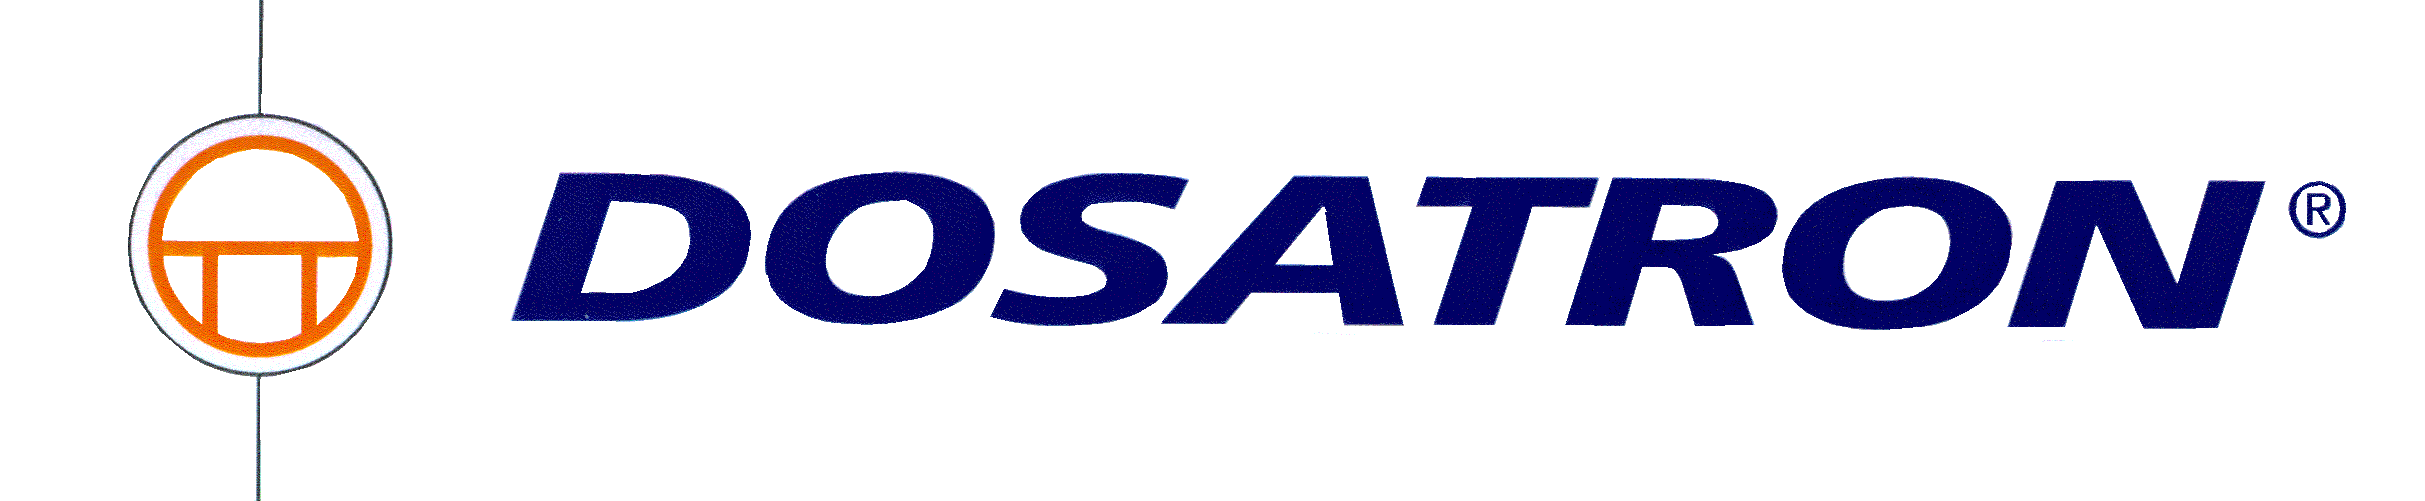 OSpare_dosatron-logo.gif